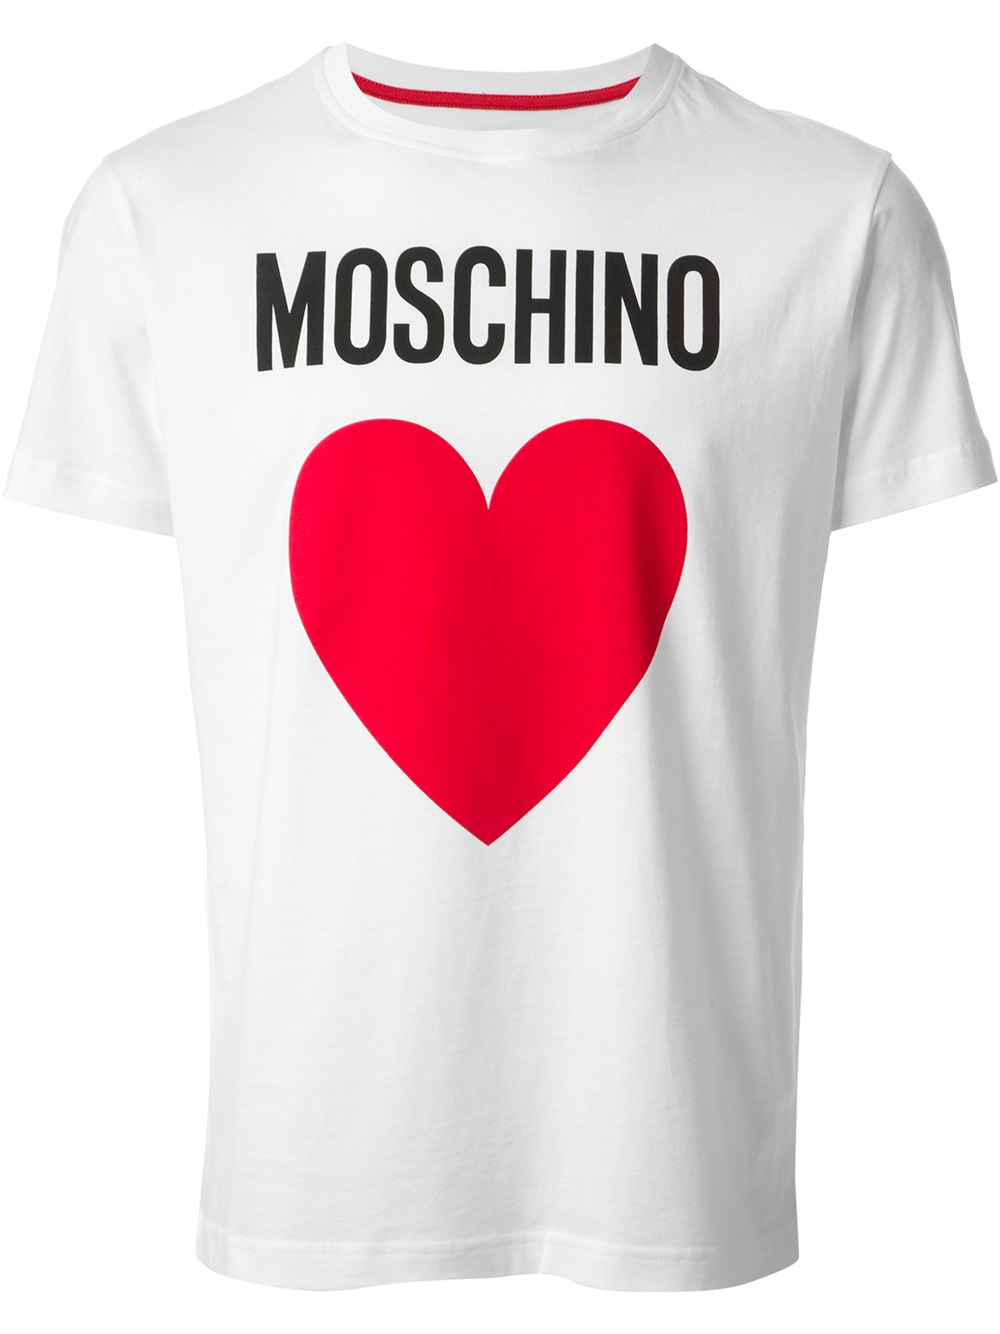 red and white moschino t shirt